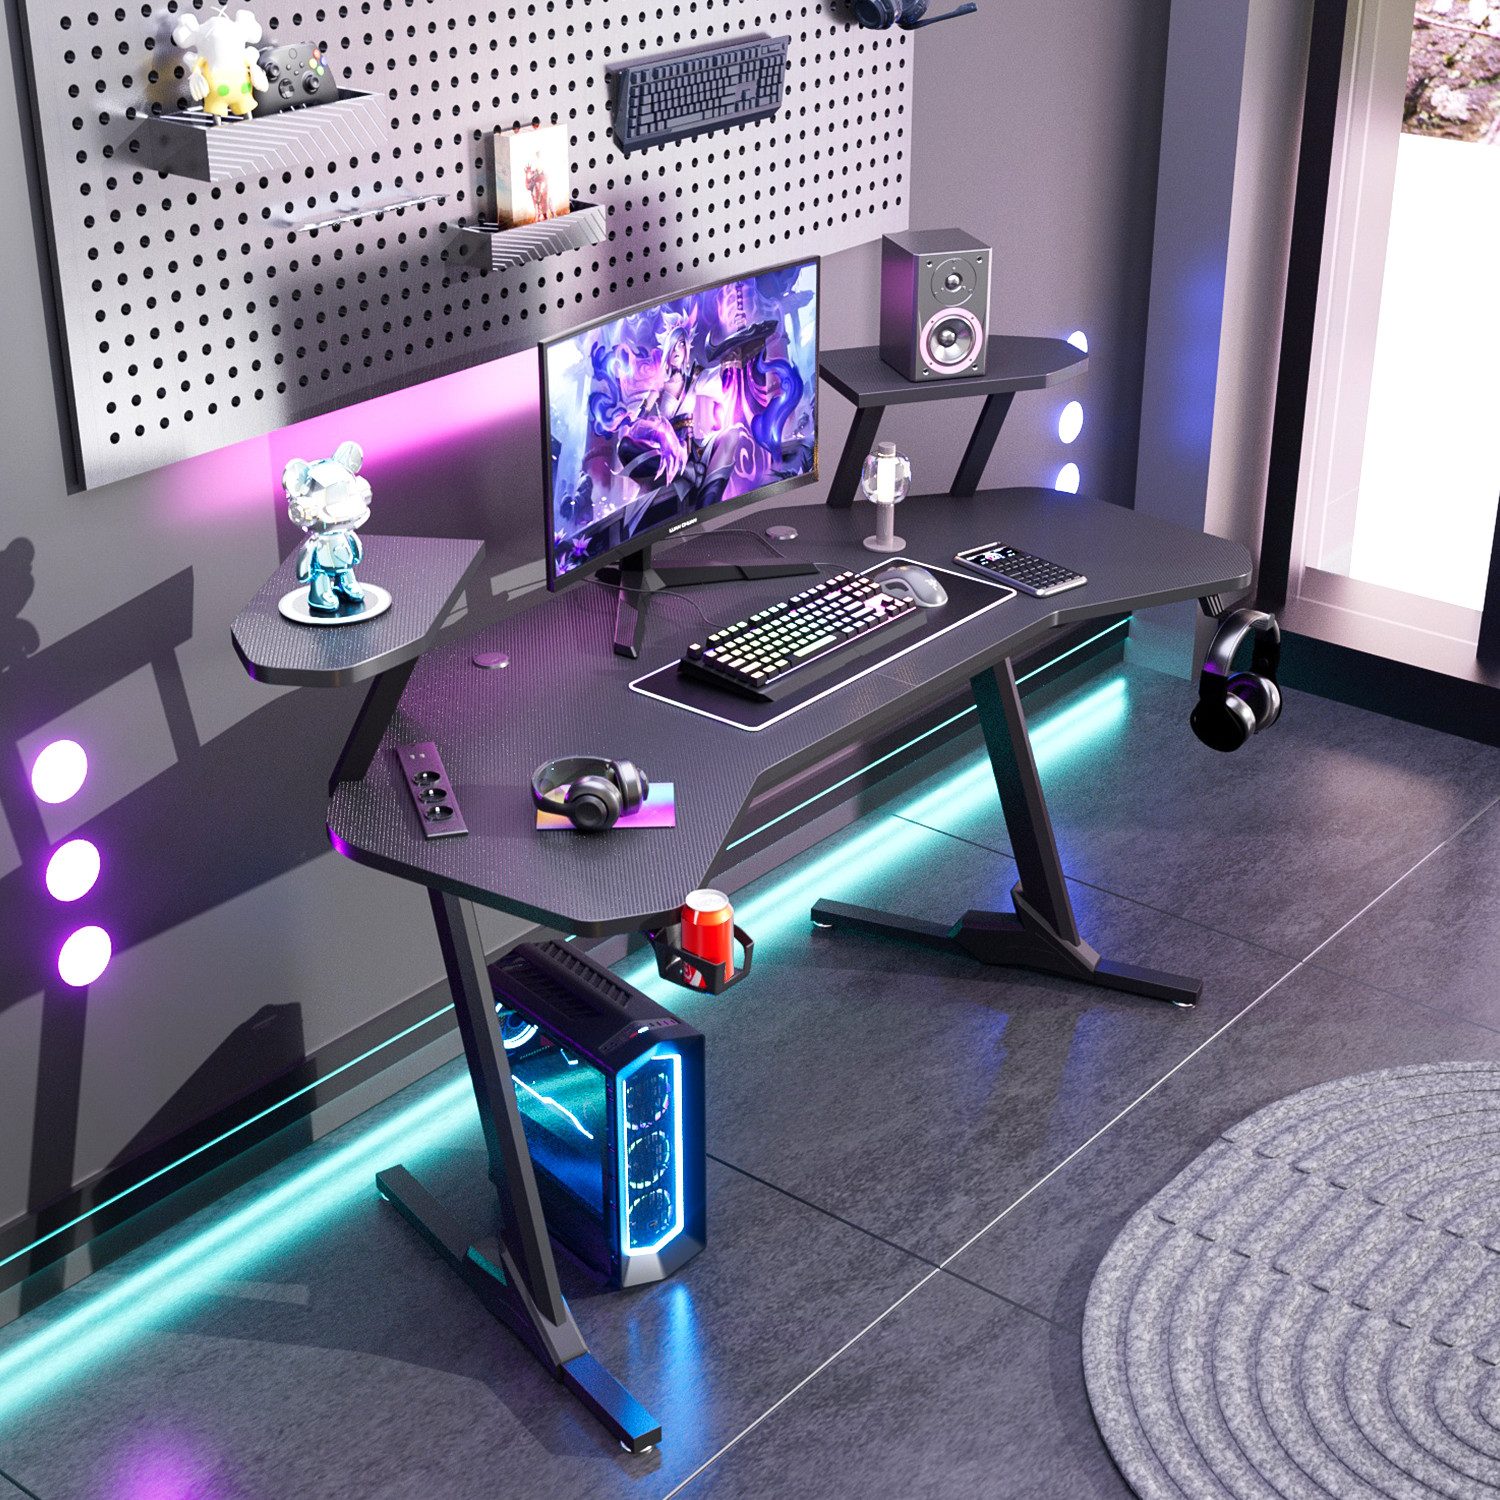 LETGOSPT Gamingtisch PC Gaming-Tisch Ergonomischer Gamer Desk, 160 x 60 x 72 cm, mit 2 Ständern ausgestattet, Kopfhörerhaken und Getränkehalter